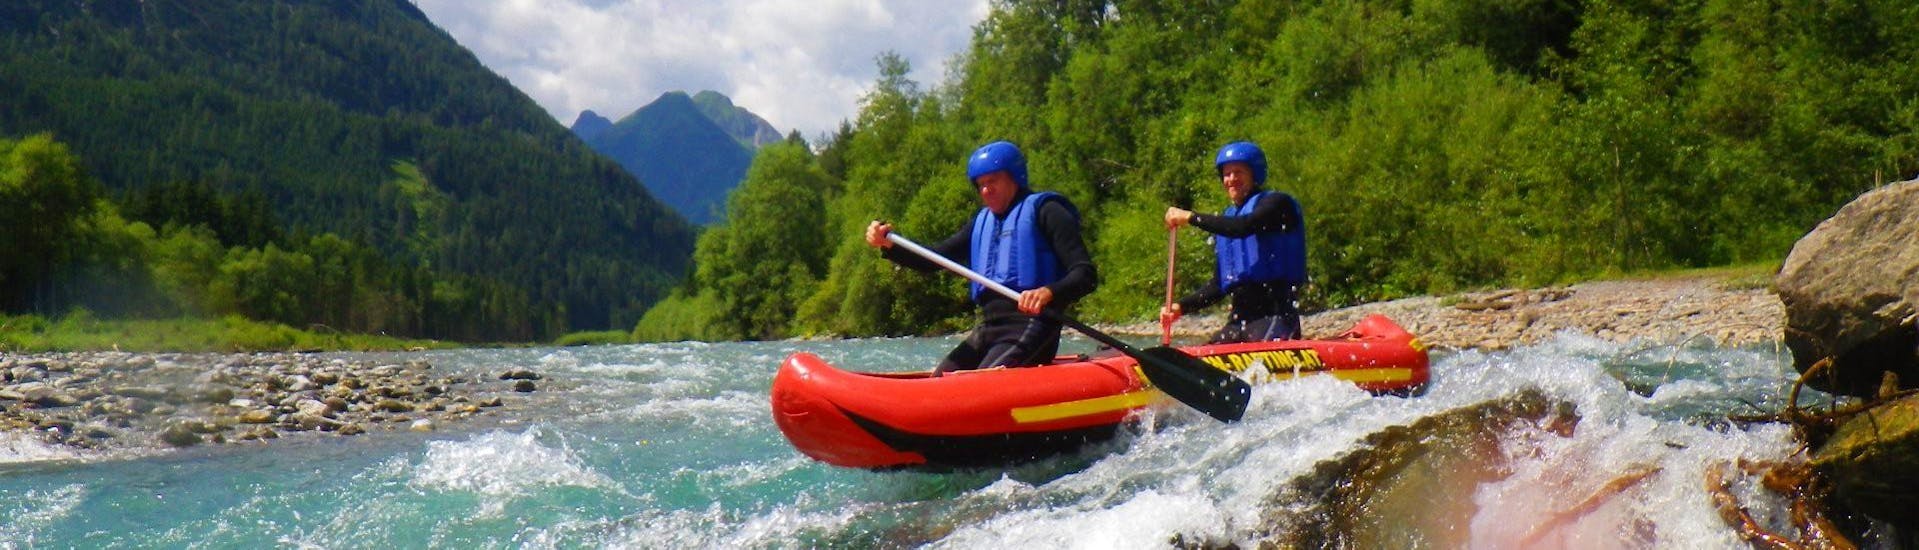 Rafting sportif à Häselgehr - Tiroler Lech Nature Park.